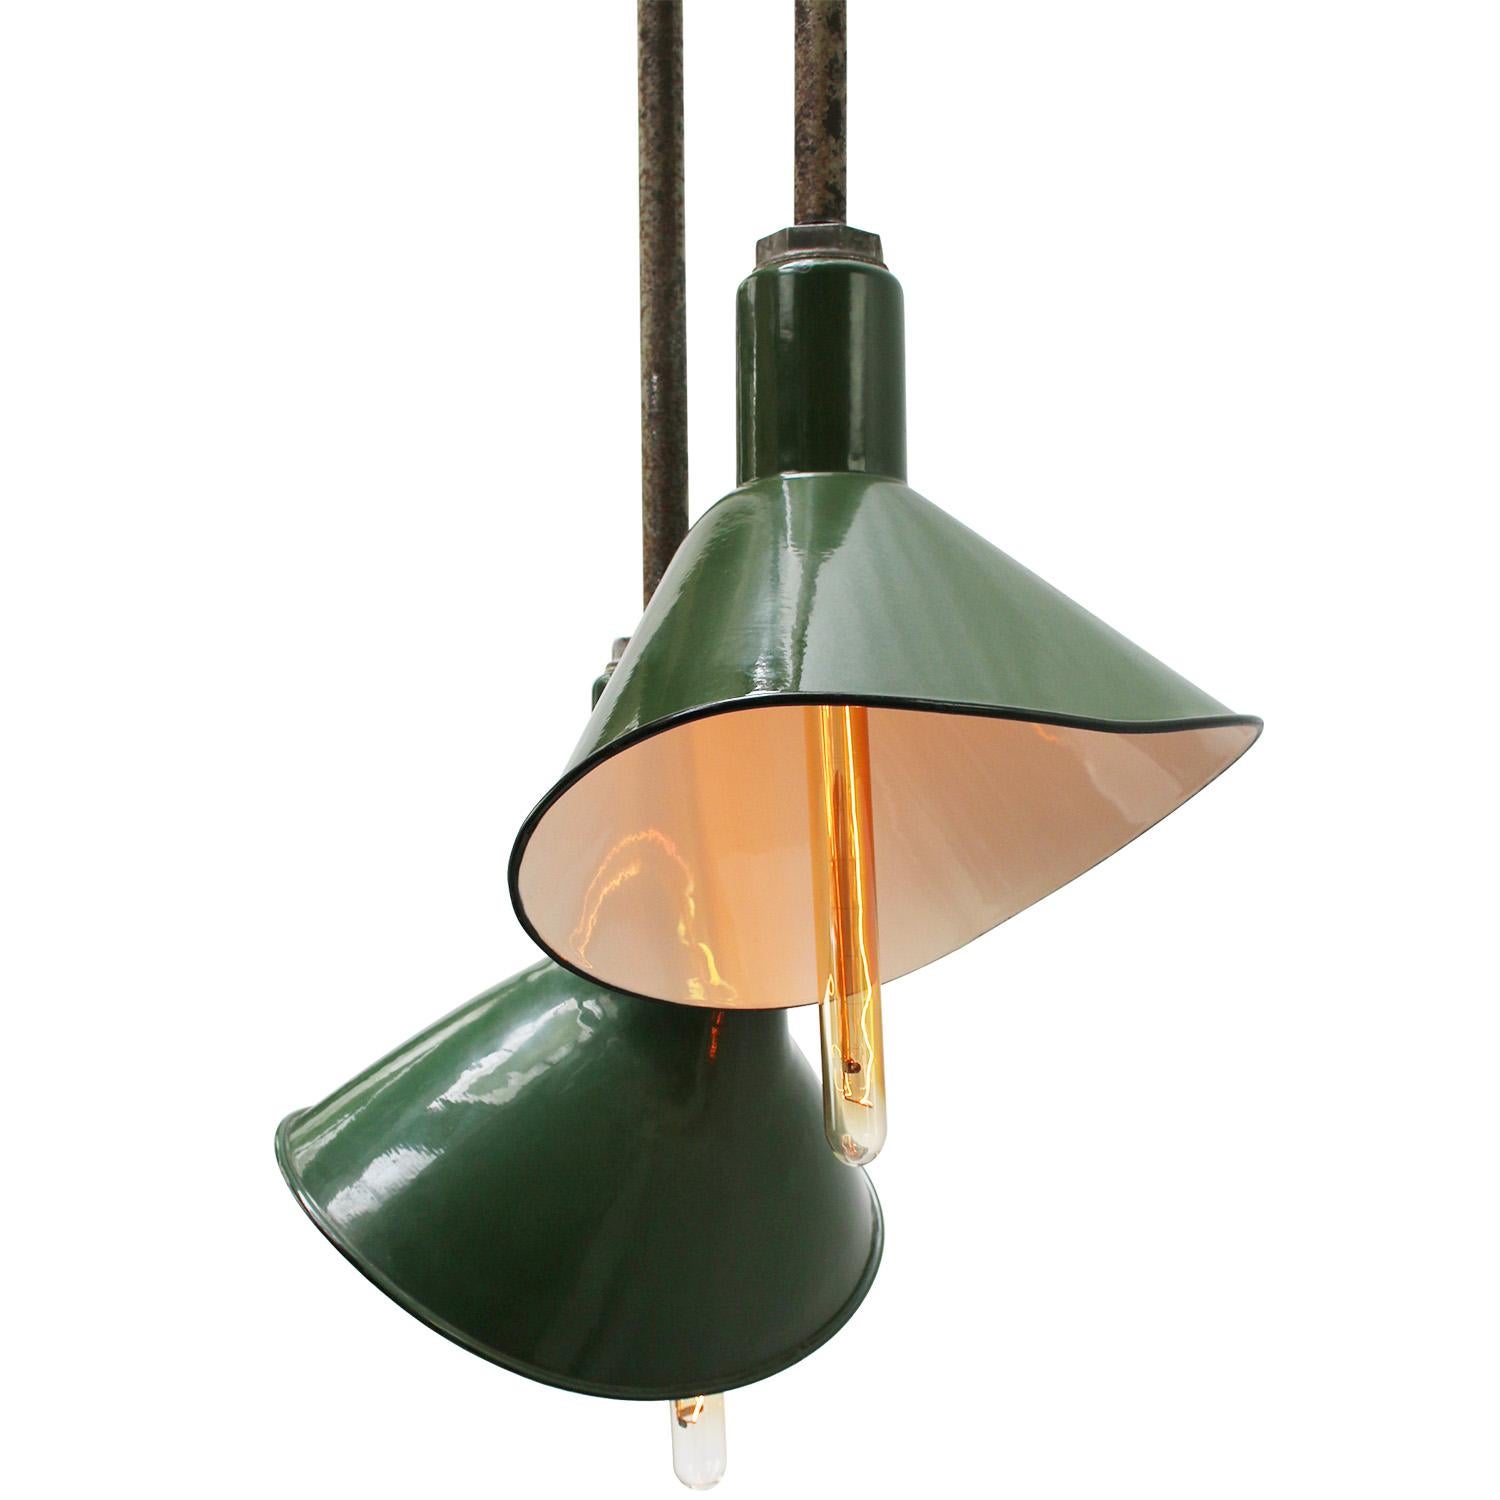 Vintage American asymmetrische grüne industrielle Deckenlampe.
Grüne Emaille. Seltenes Modell.

Durchmesser Deckenplatte 4.25